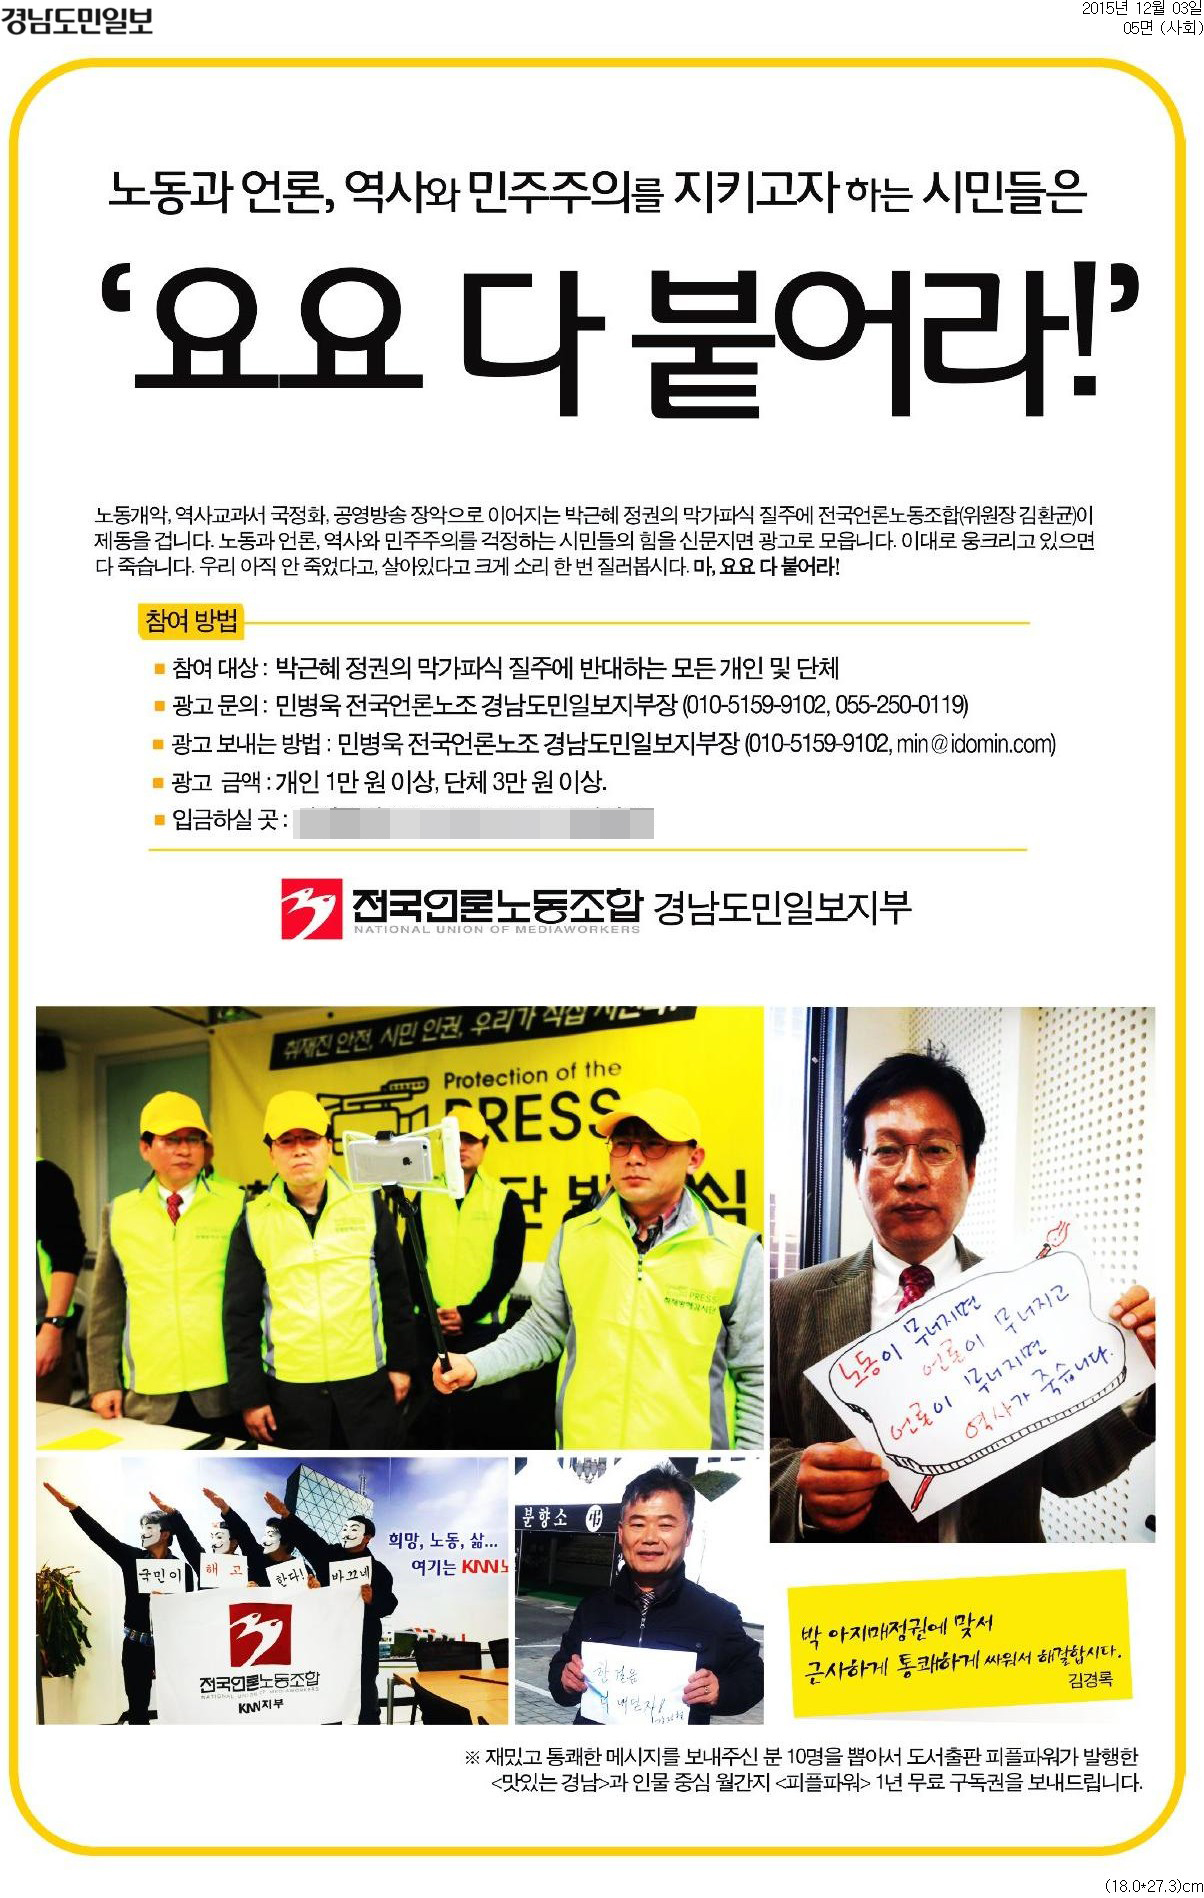 2015년 12월 3일 자 <경남도민일보>에 실린 두 번째 광고.